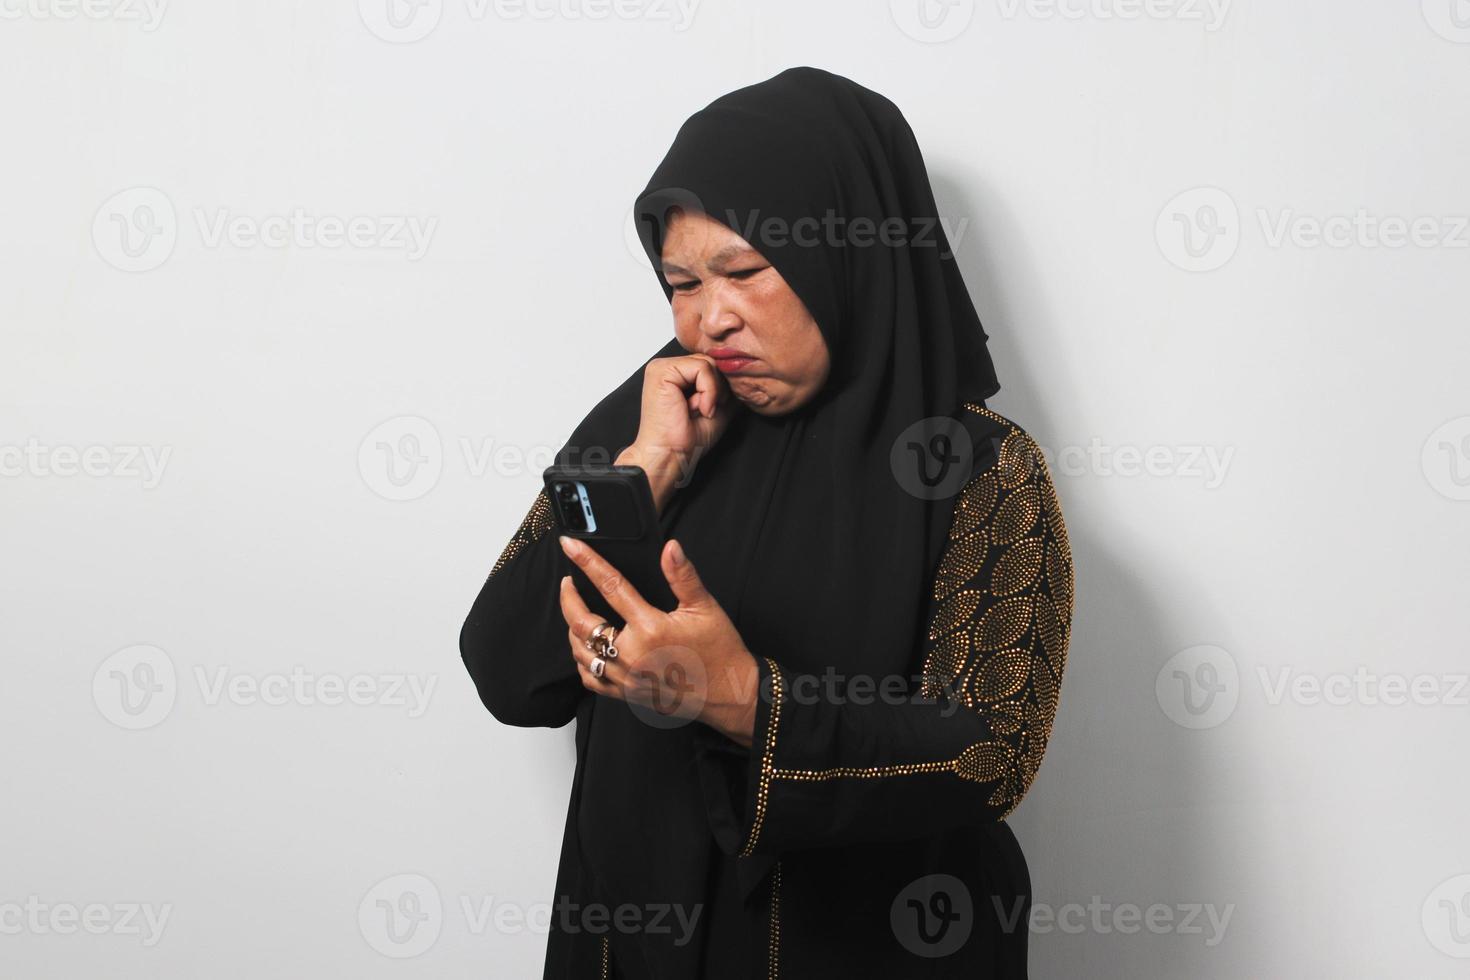 mitten åldrig asiatisk kvinnor bär hijab känner ledsen läsning dålig Nyheter på mobil telefon foto